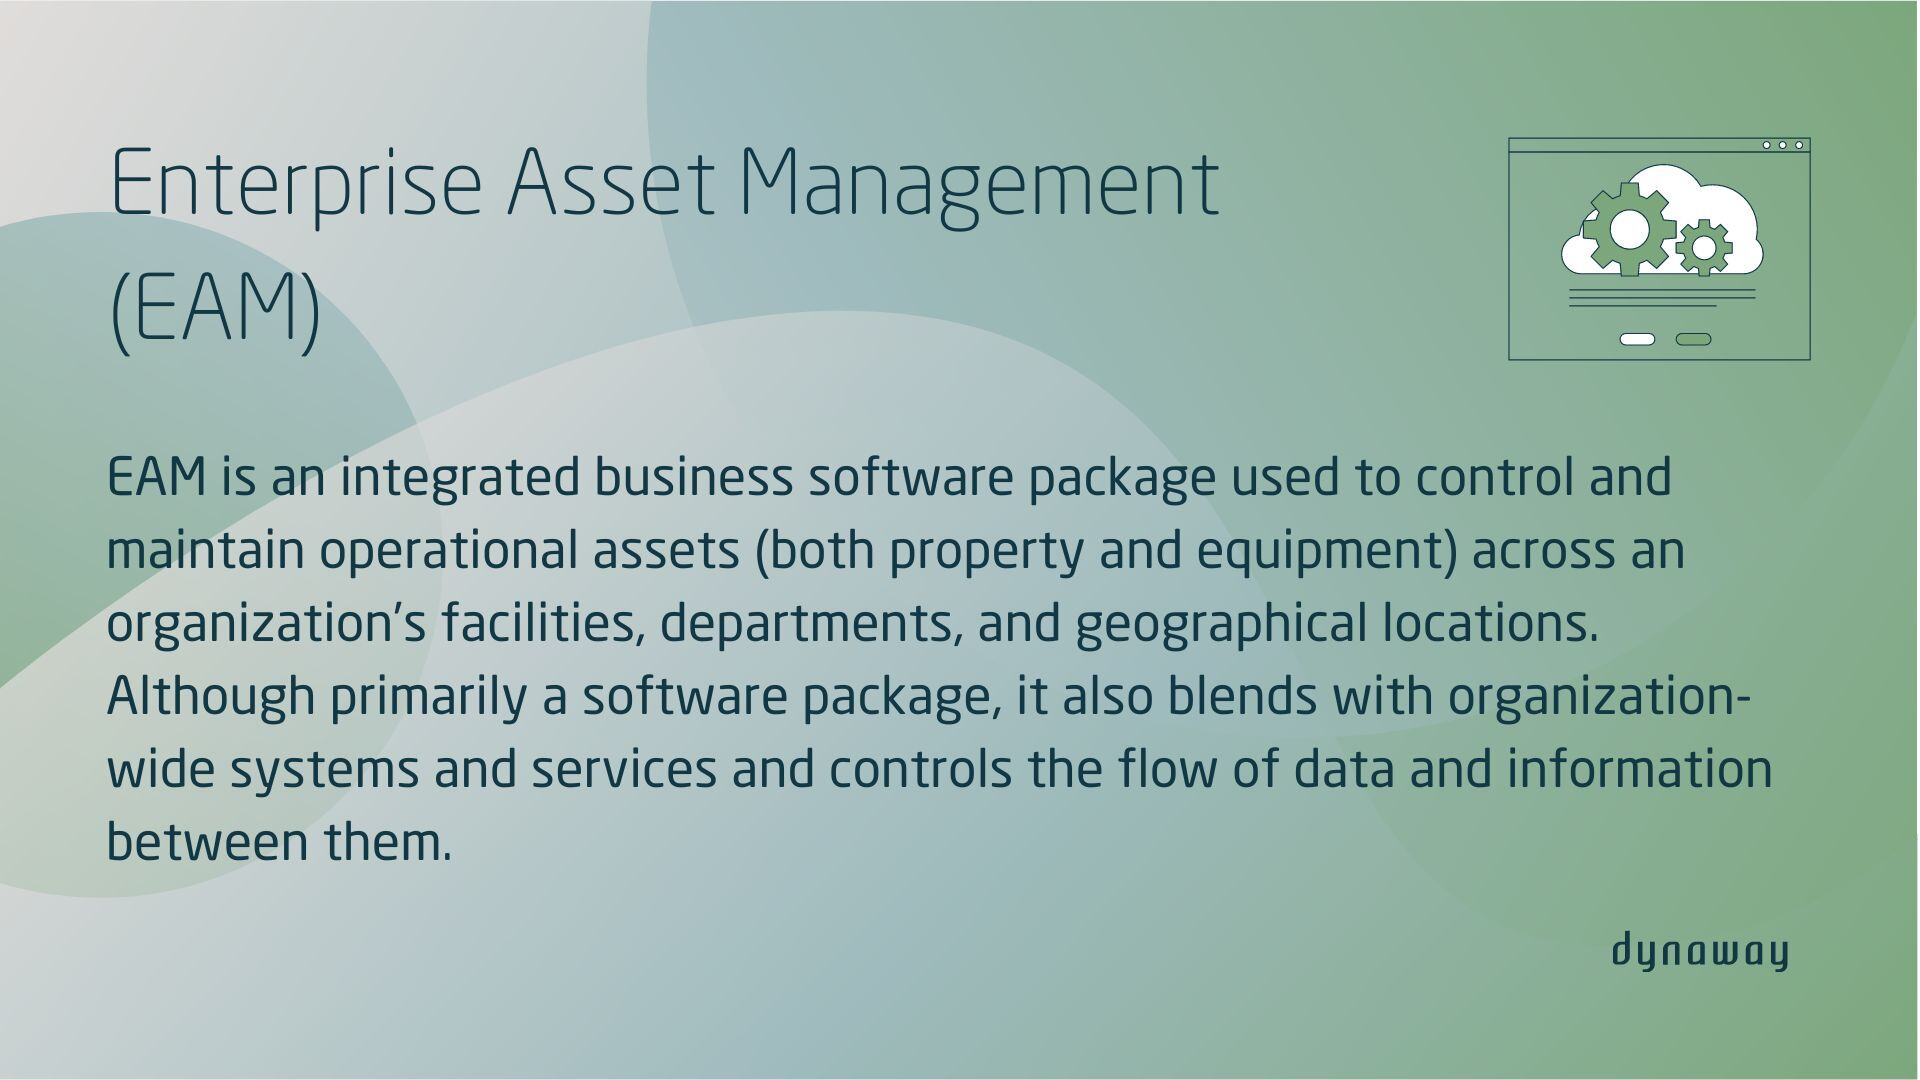 Enterprise Asset Management definition